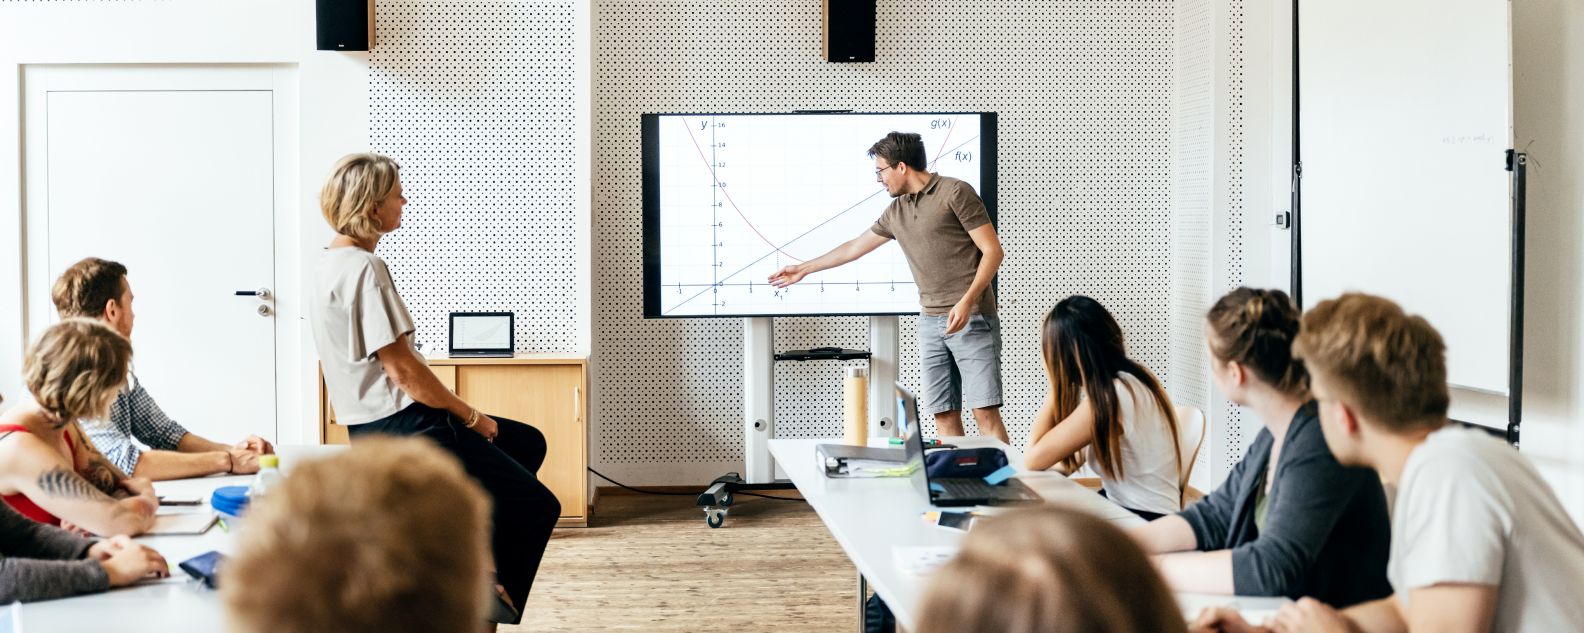 Un estudiante realizando una presentación ante la clase durante una sesión de un seminario y utilizando un monitor de gran tamaño como ayuda visual